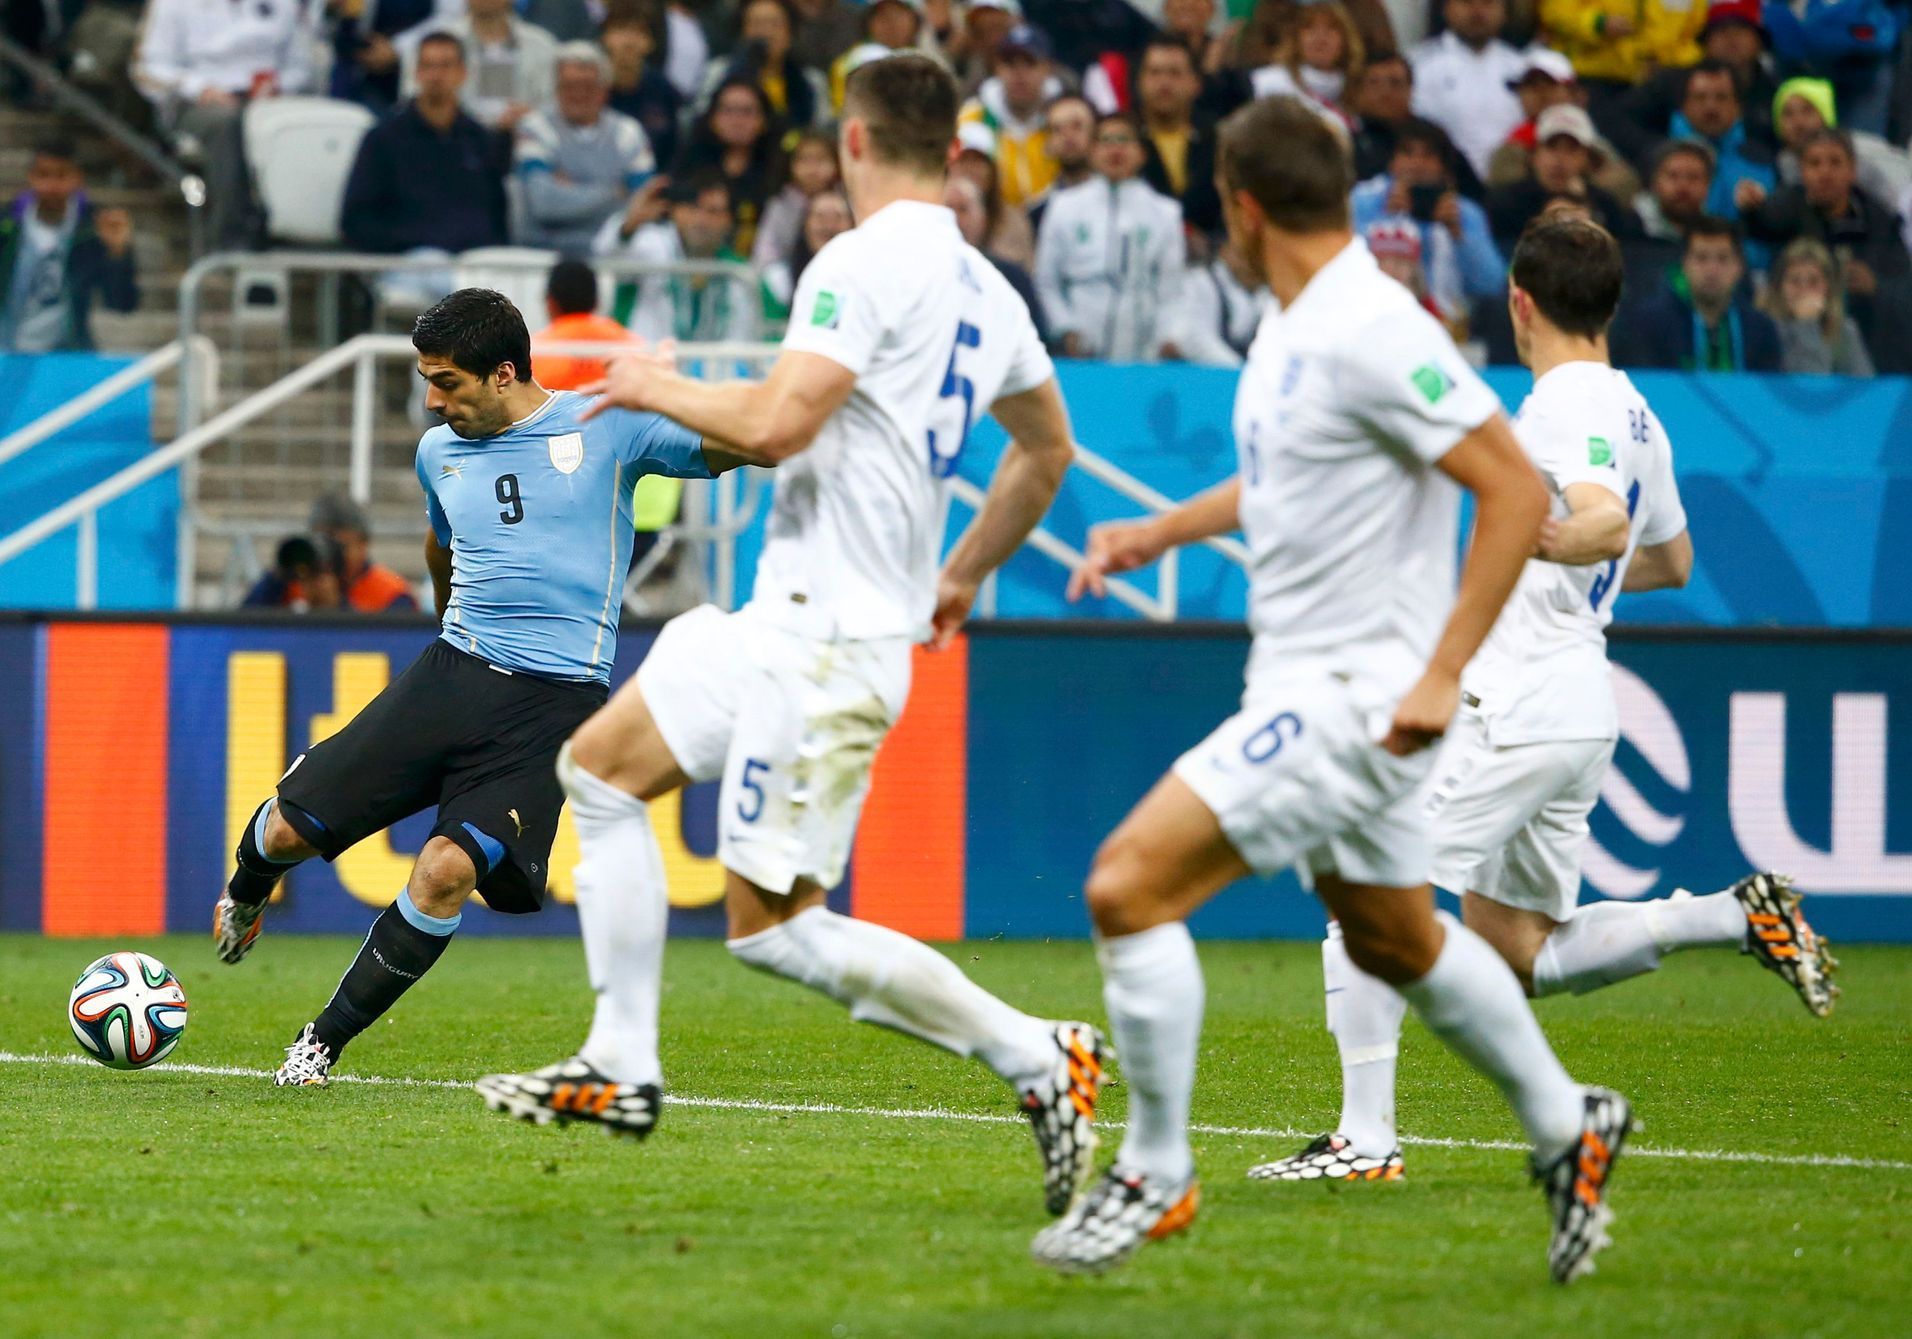 Cahill, Jagielka a Baines příhlíží skórujícímu Suárezovi v zápase MS Anglie vs. Uruguay